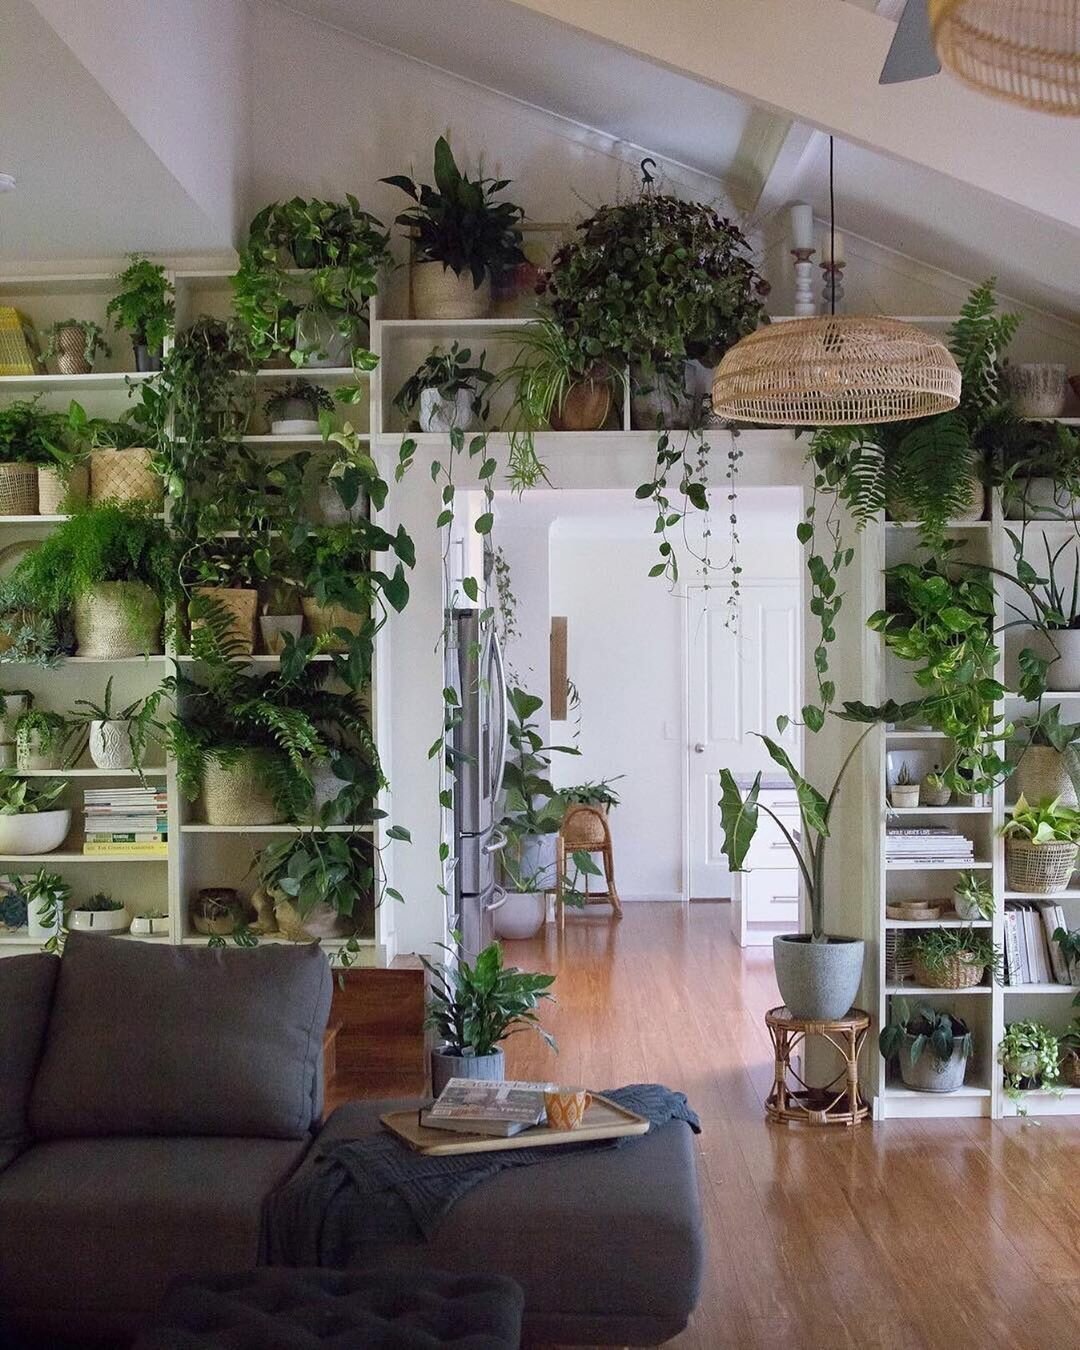 цель проекта комнатные растения в интерьере жилого дома